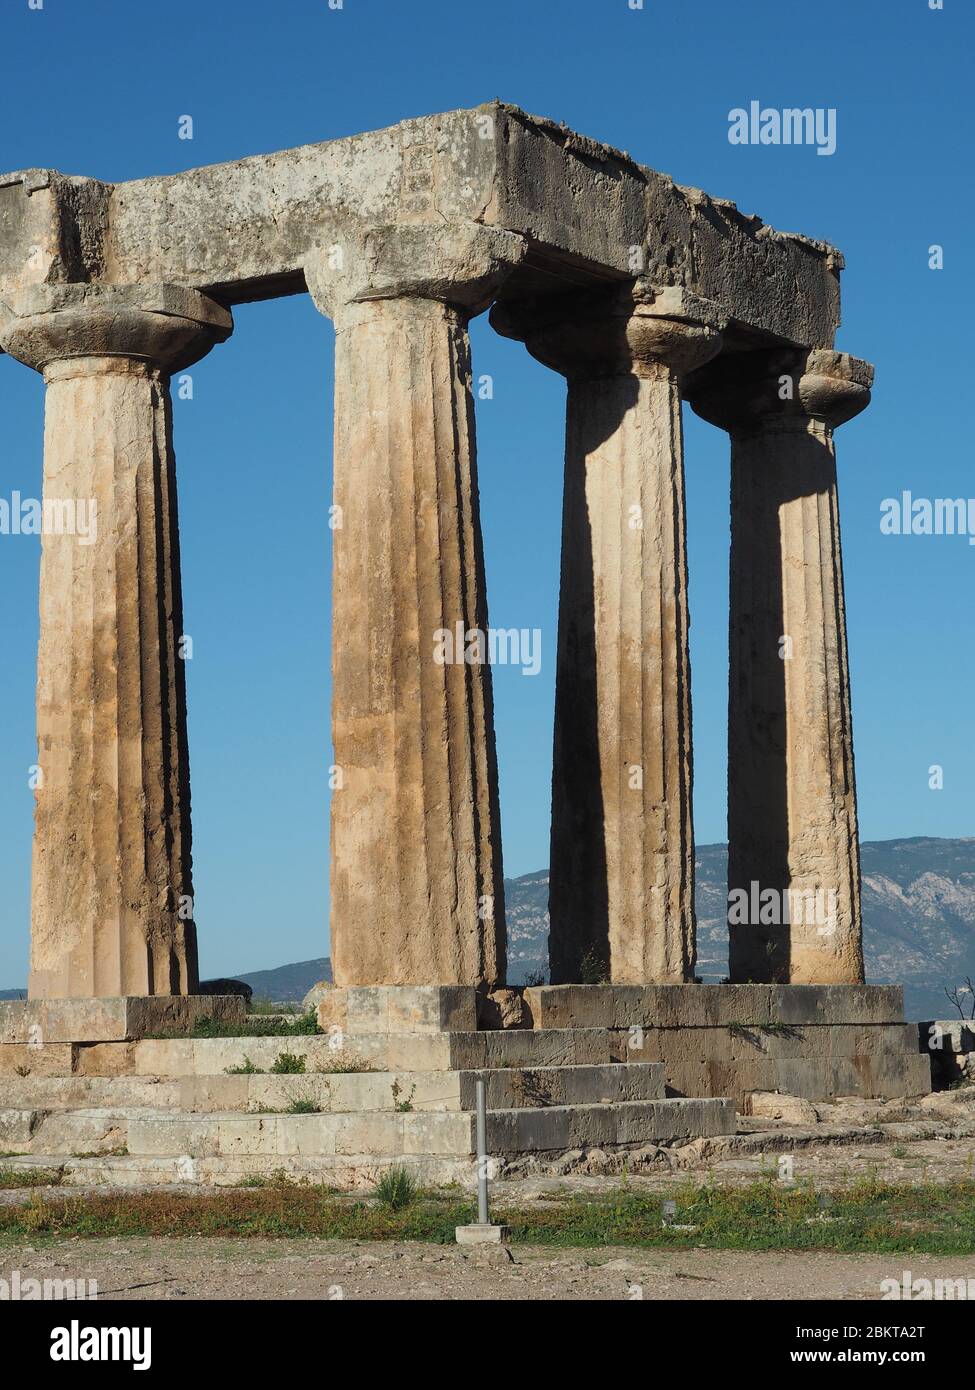 Colonne doriche del Tempio arcaico ad Apollo a Corinto, Peloponneso, Grecia contro un cielo blu Foto Stock